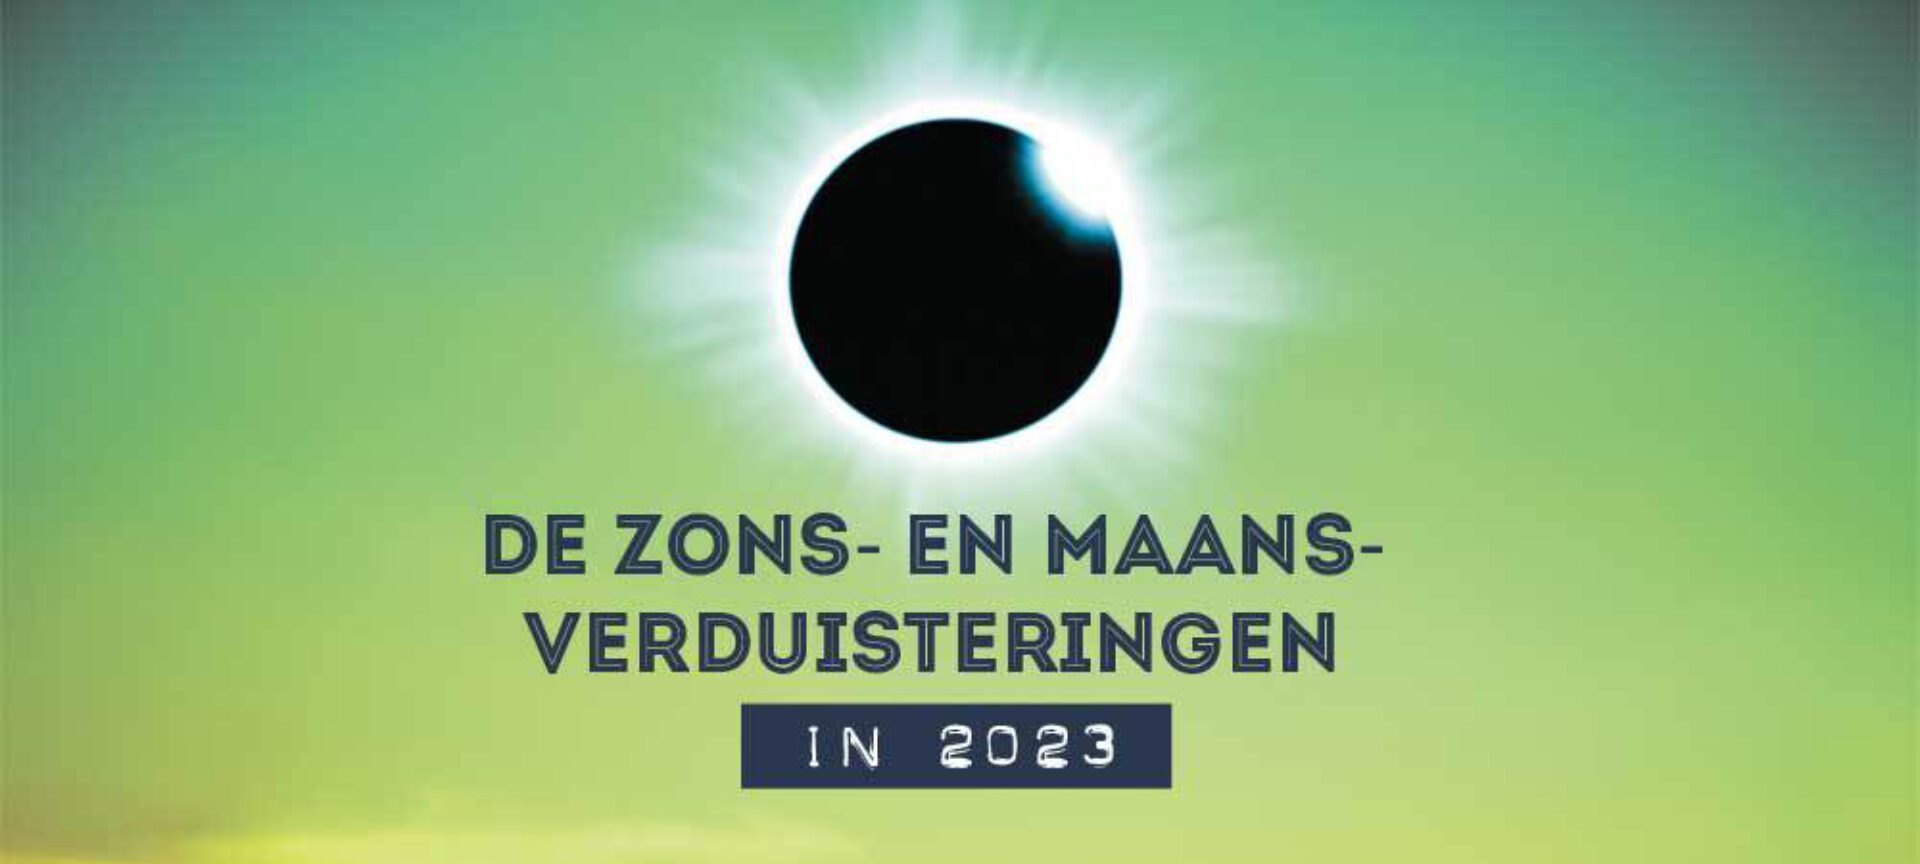 Zonsverduisteringen en maansverduisteringen 2023